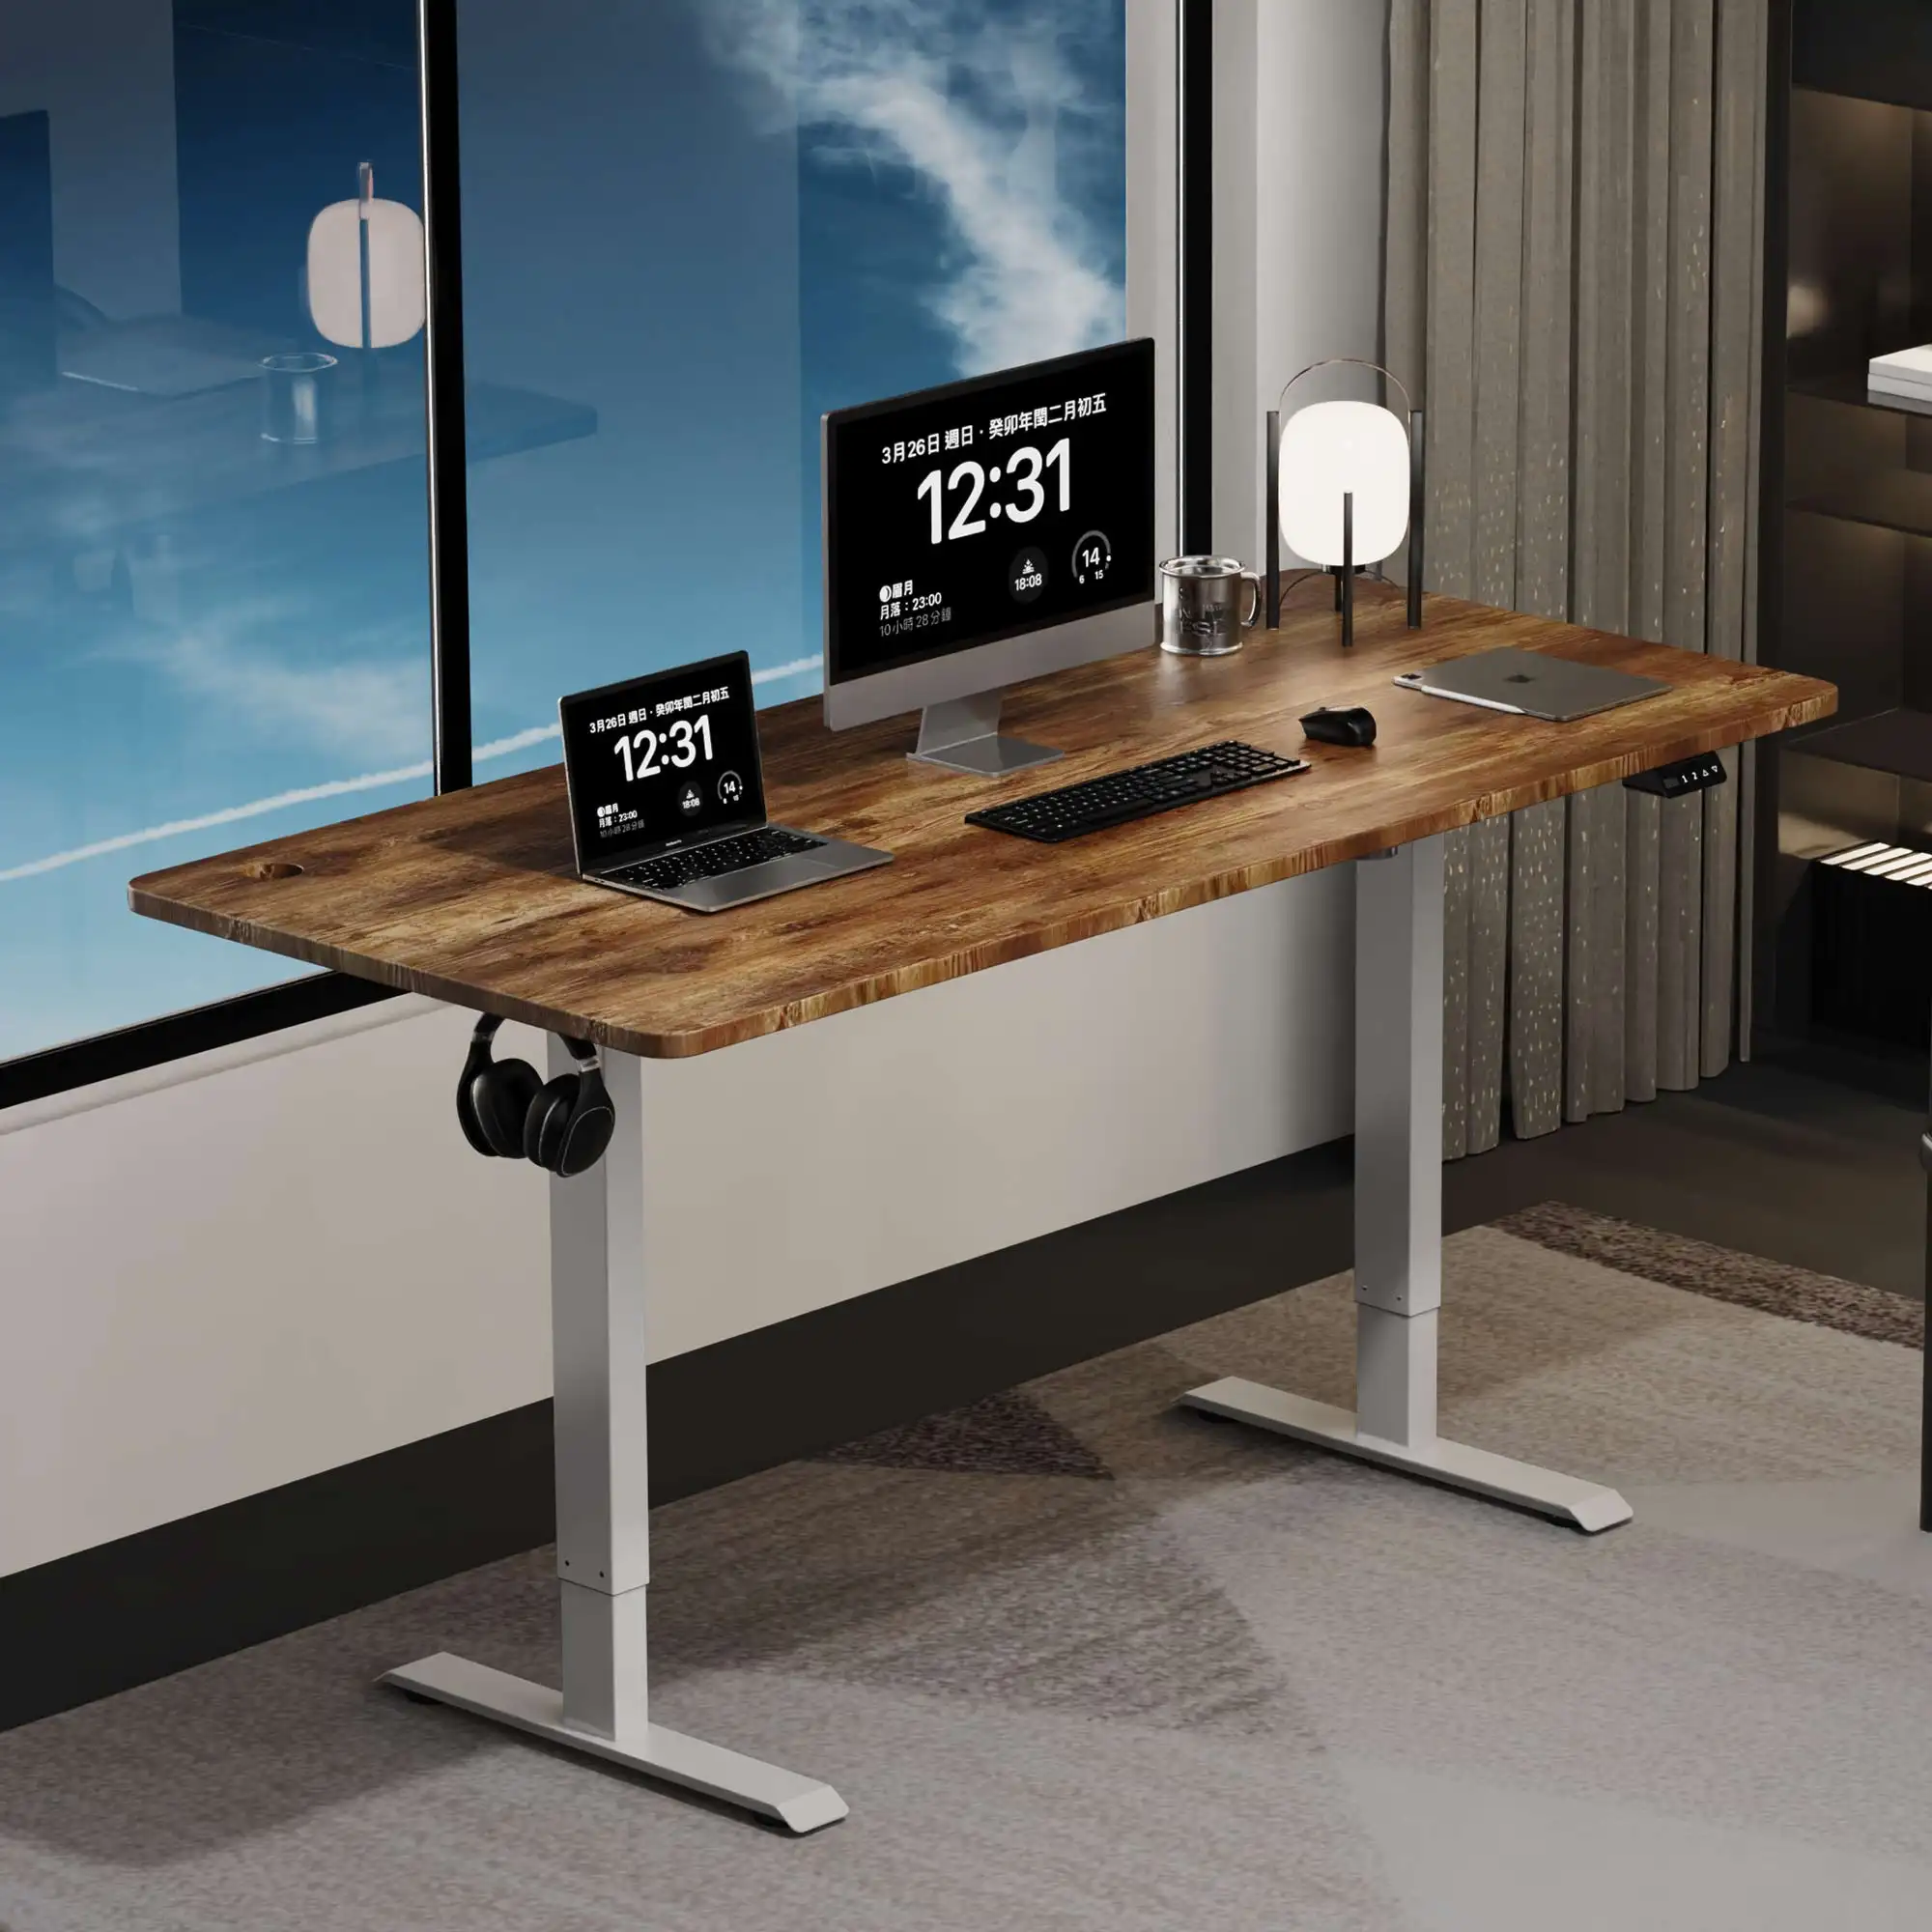 NBHY meja listrik rumah kantor Modern, komputer pintar tinggi meja dapat diatur